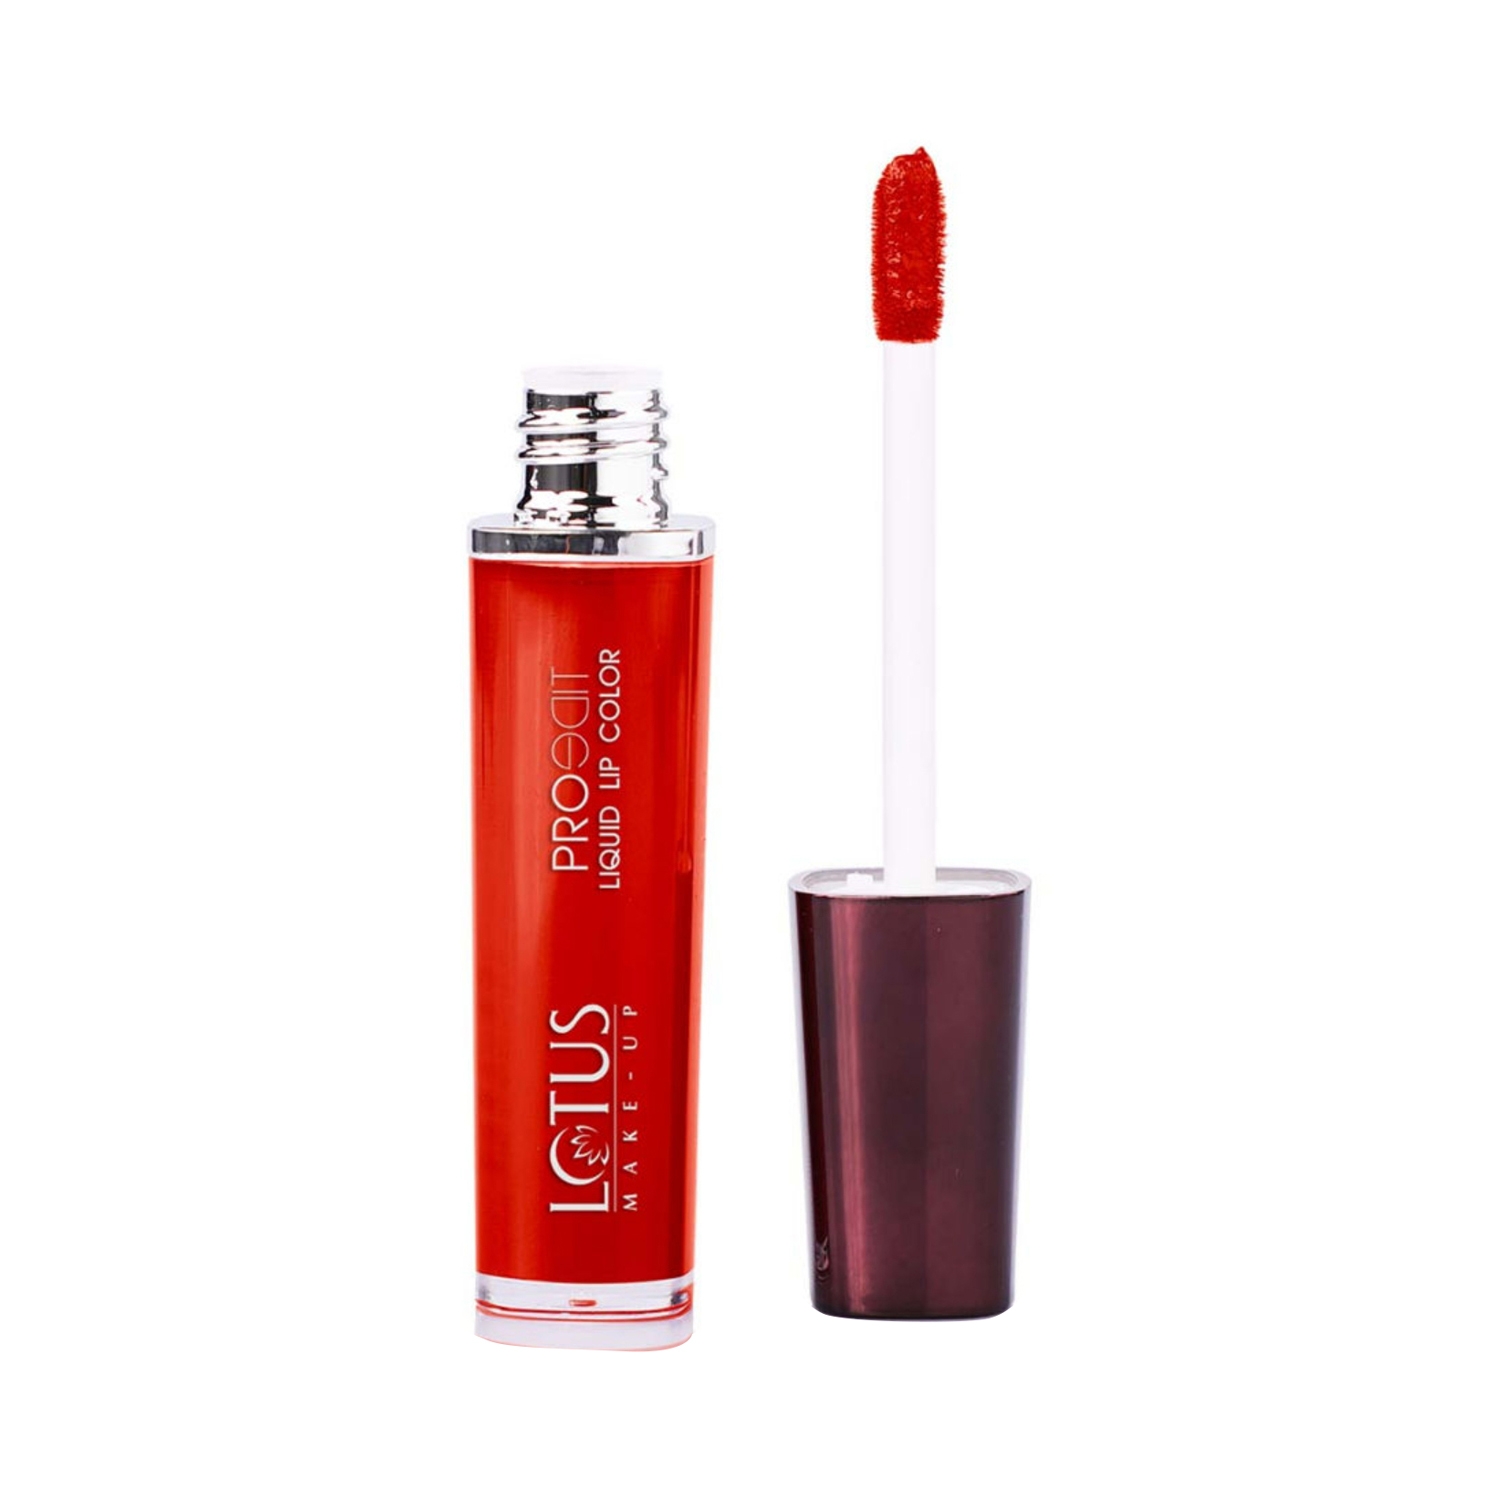 Lotus | Lotus Makeup Proedit Liquid Matte Lip Color - PLC02 Red Carpet (8g)